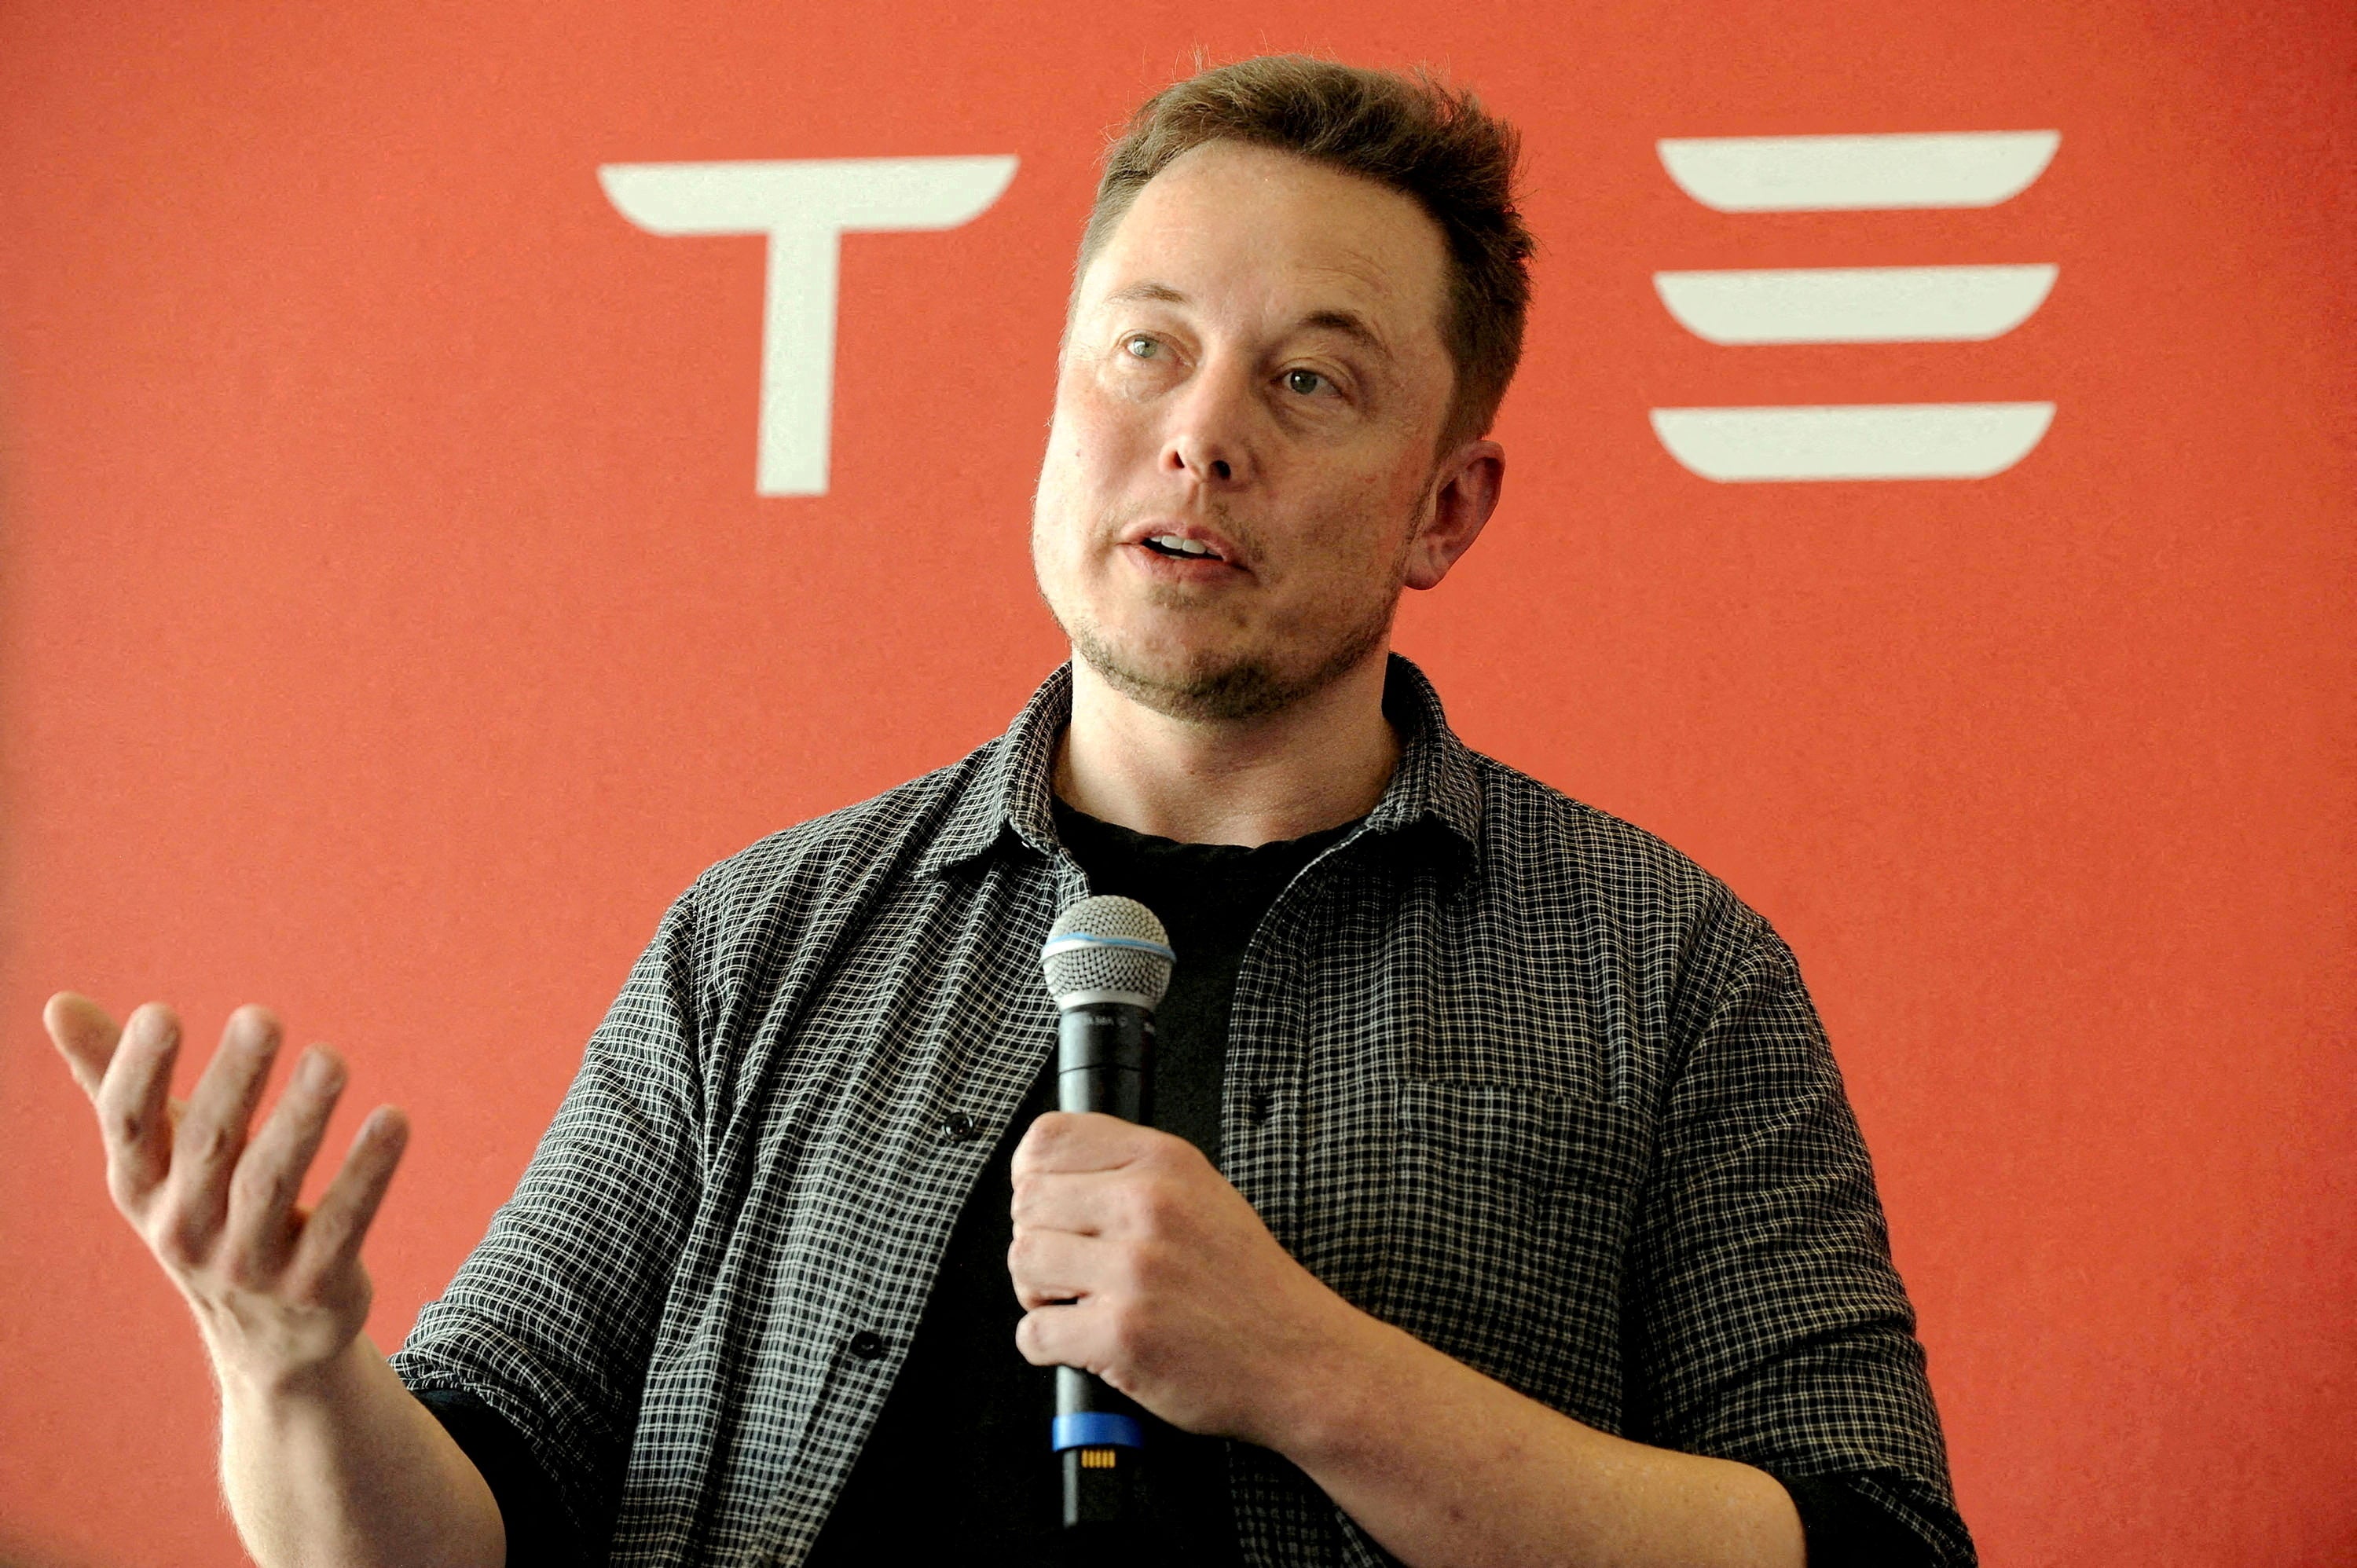 Elon Musk rechaza las acusaciones en su contra y dice que son “falsas”